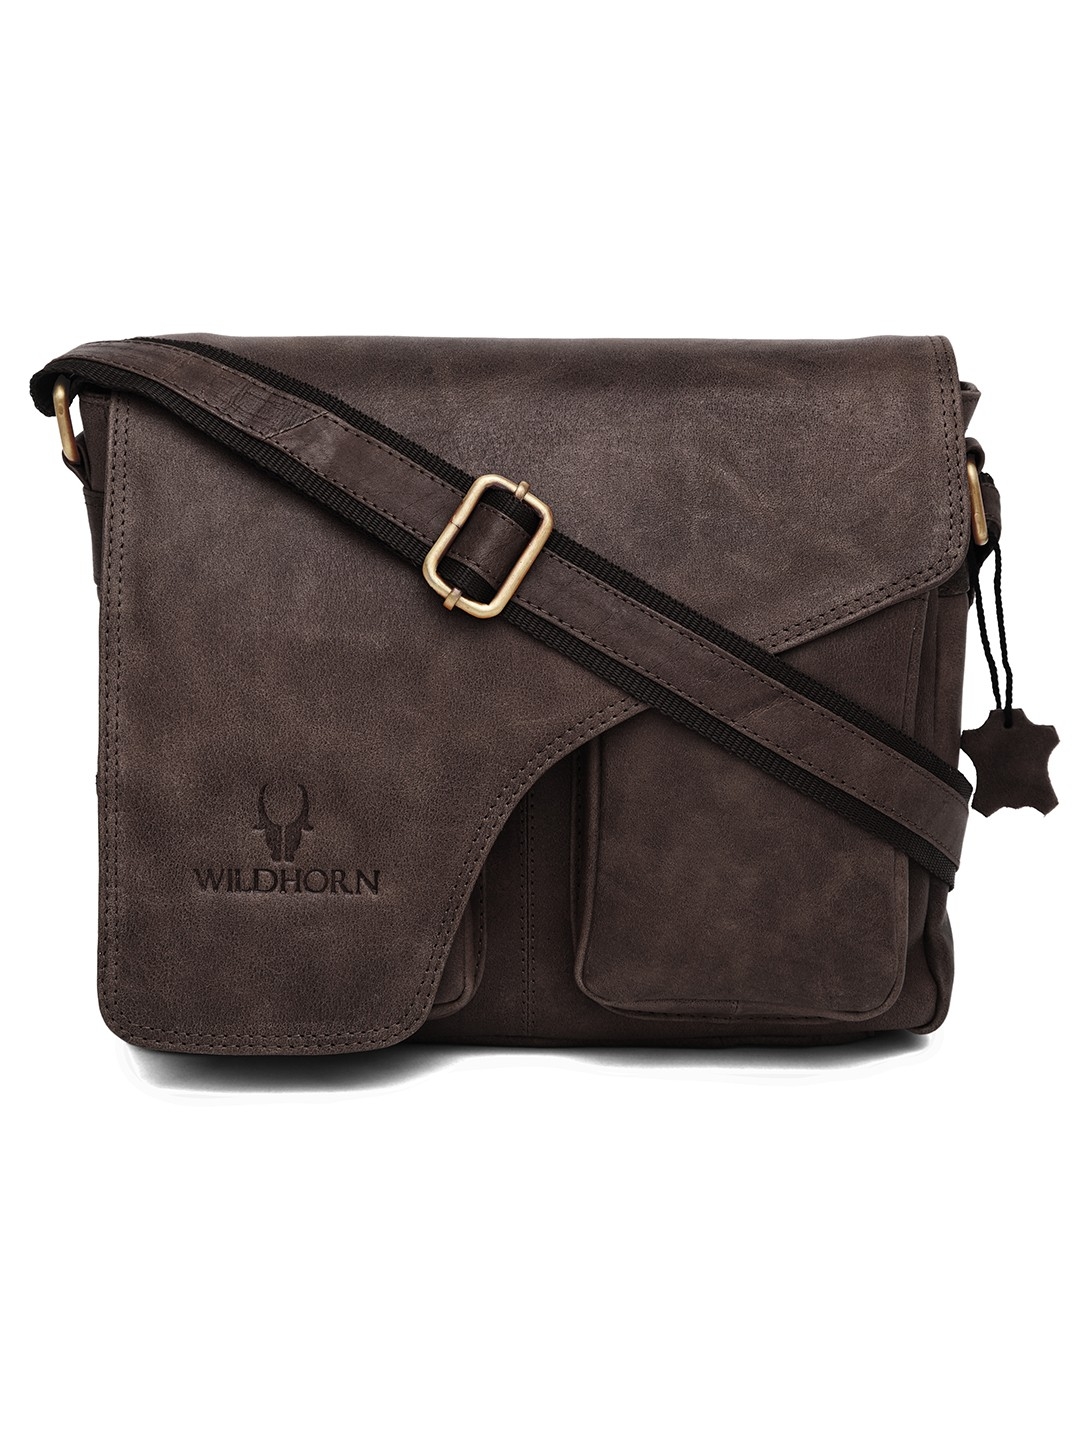 WildHorn | WildHorn Brown Classic Leather Adjustable Strap Messenger Bag for Men  0